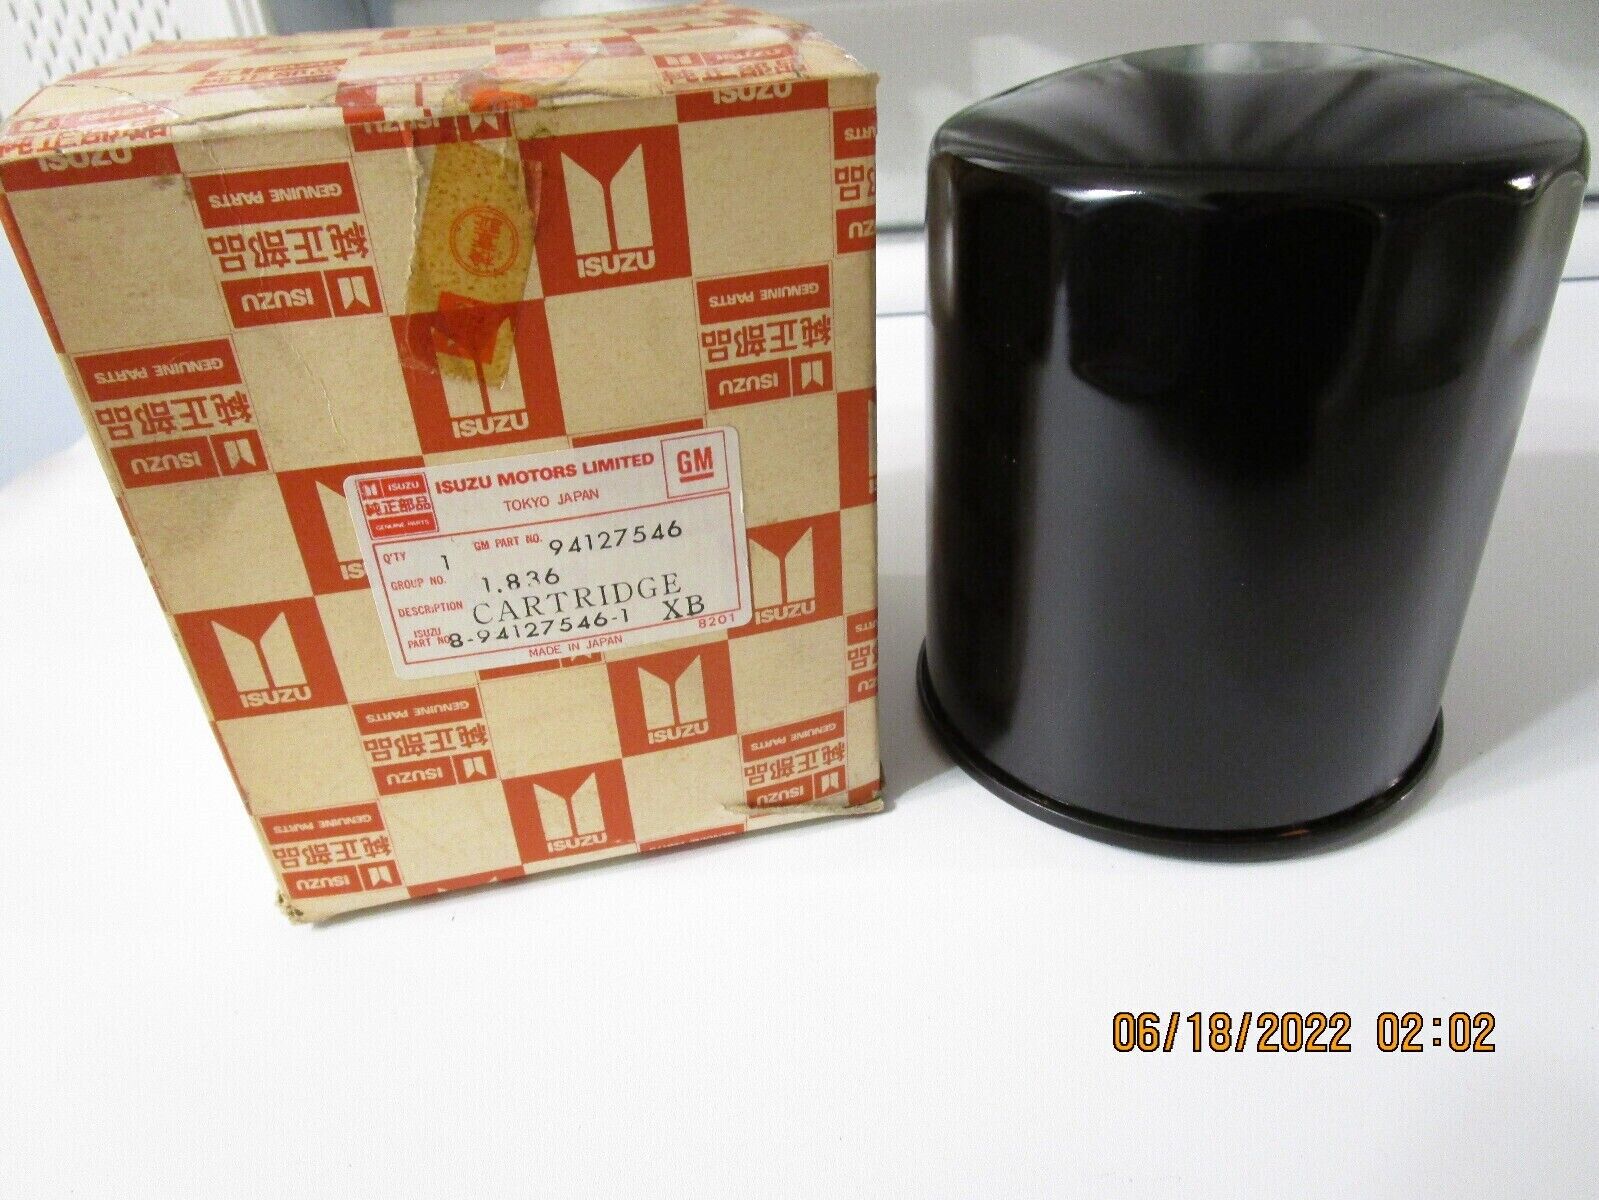 Genuine Isuzu GM Oil Filter 8-94127546-1 94127546